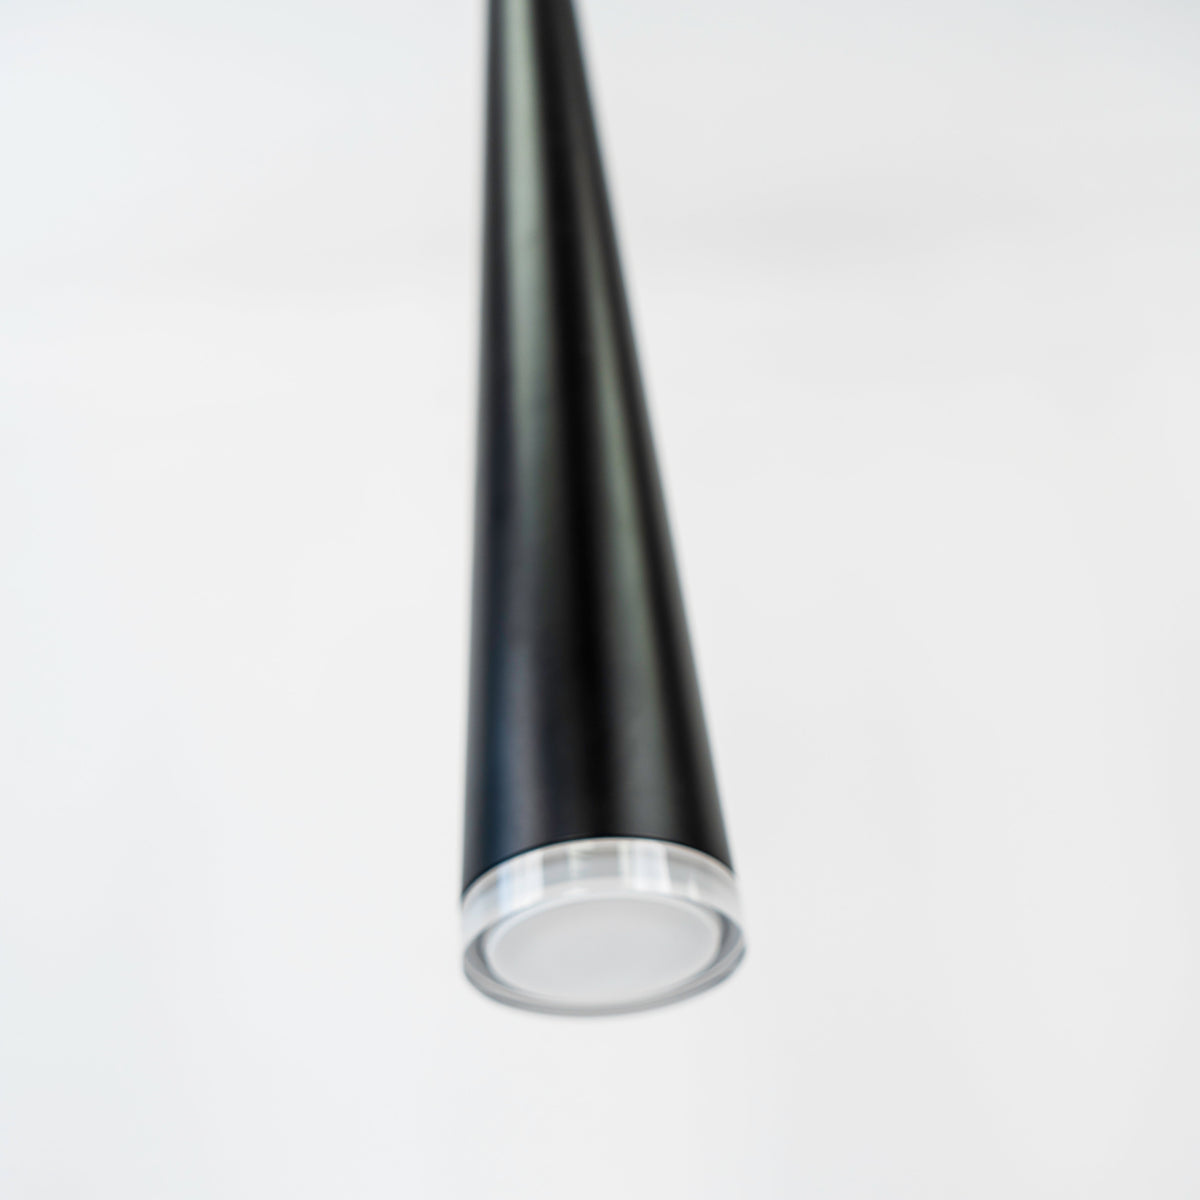 Sliver Collection 1-Light Black Large Pendant